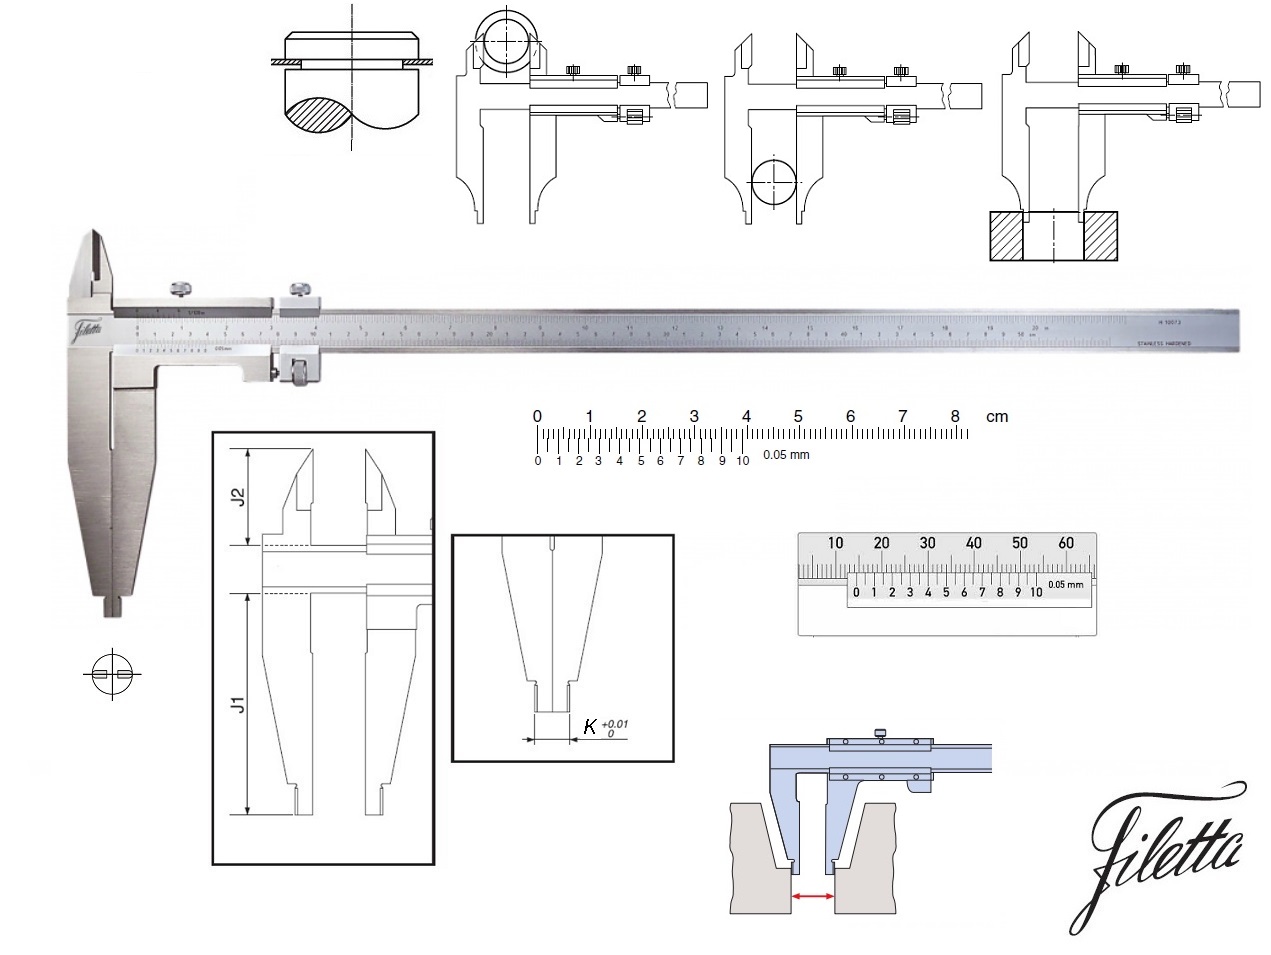 Posuvné měřítko Filetta 0-400 mm, čelisti 100 mm, s měřicími nožíky pro vnější měření